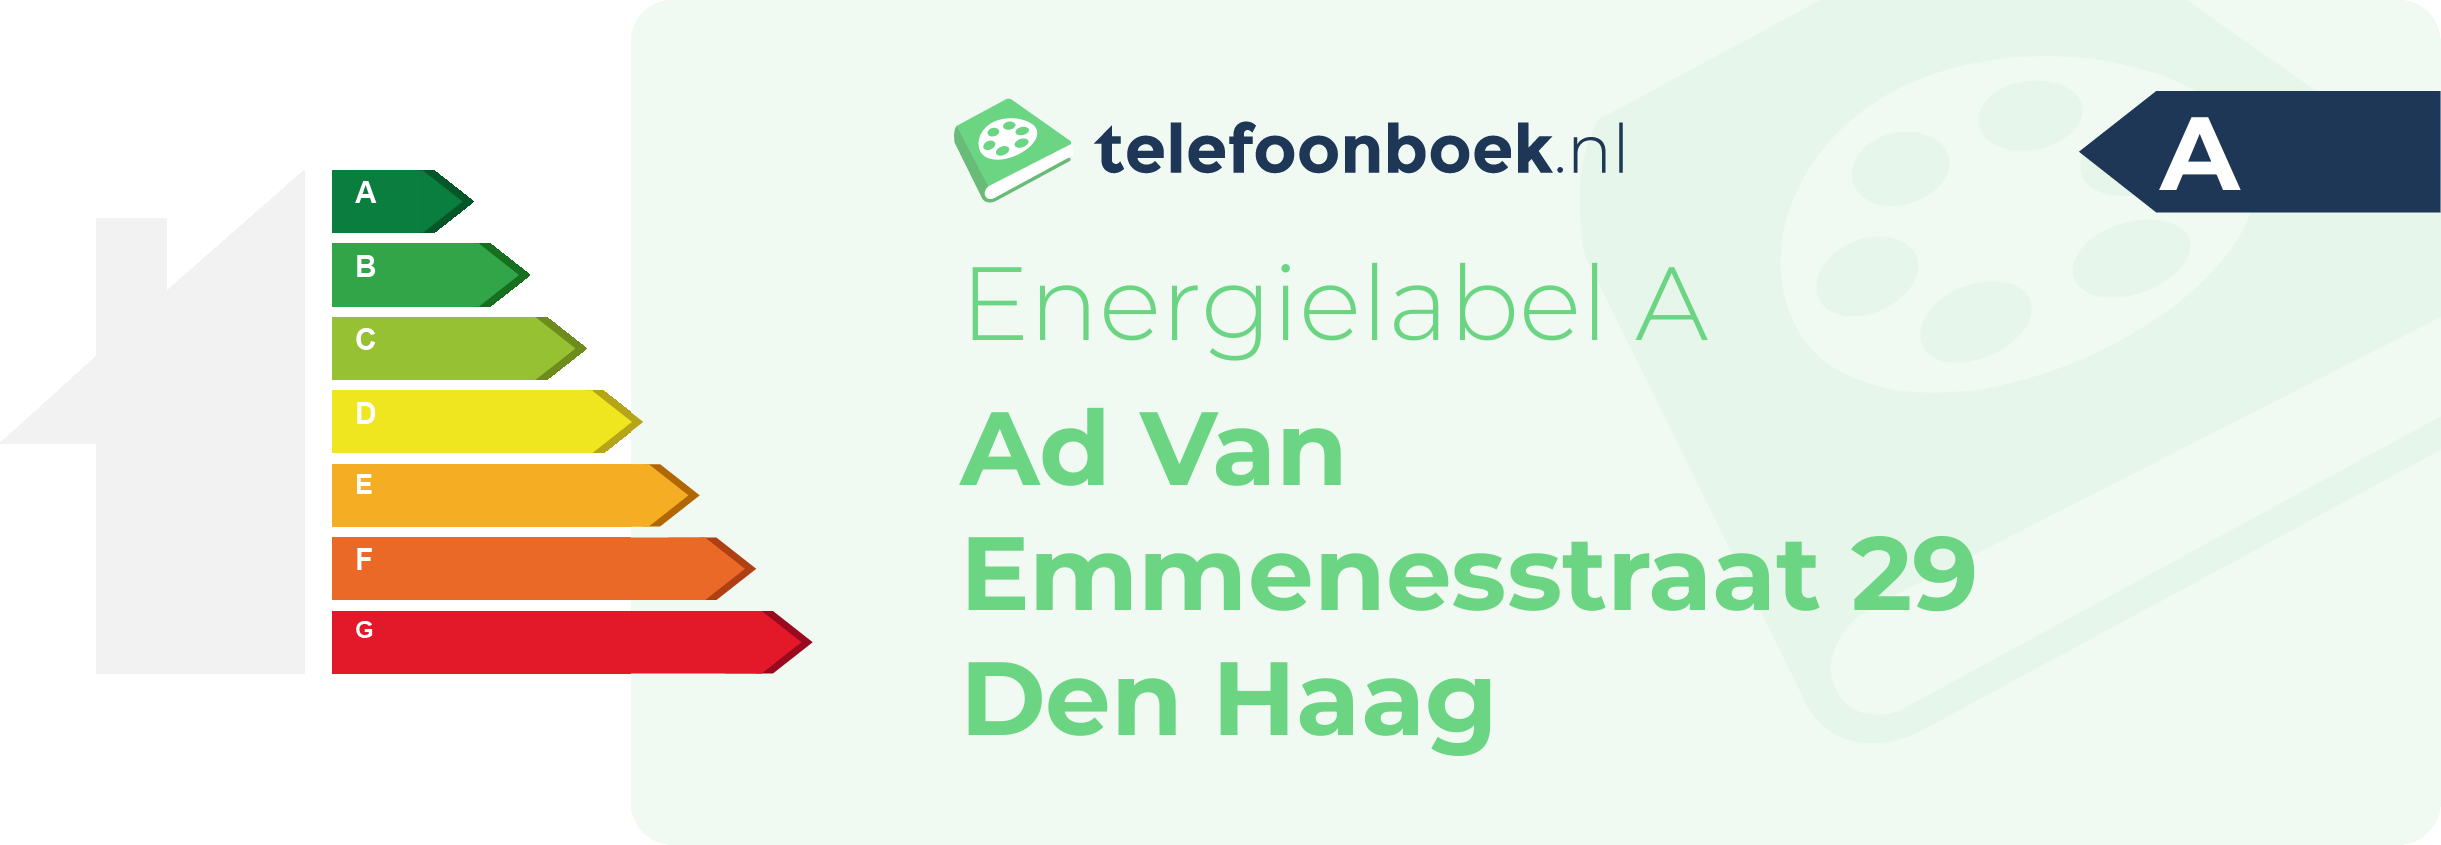 Energielabel Ad Van Emmenesstraat 29 Den Haag